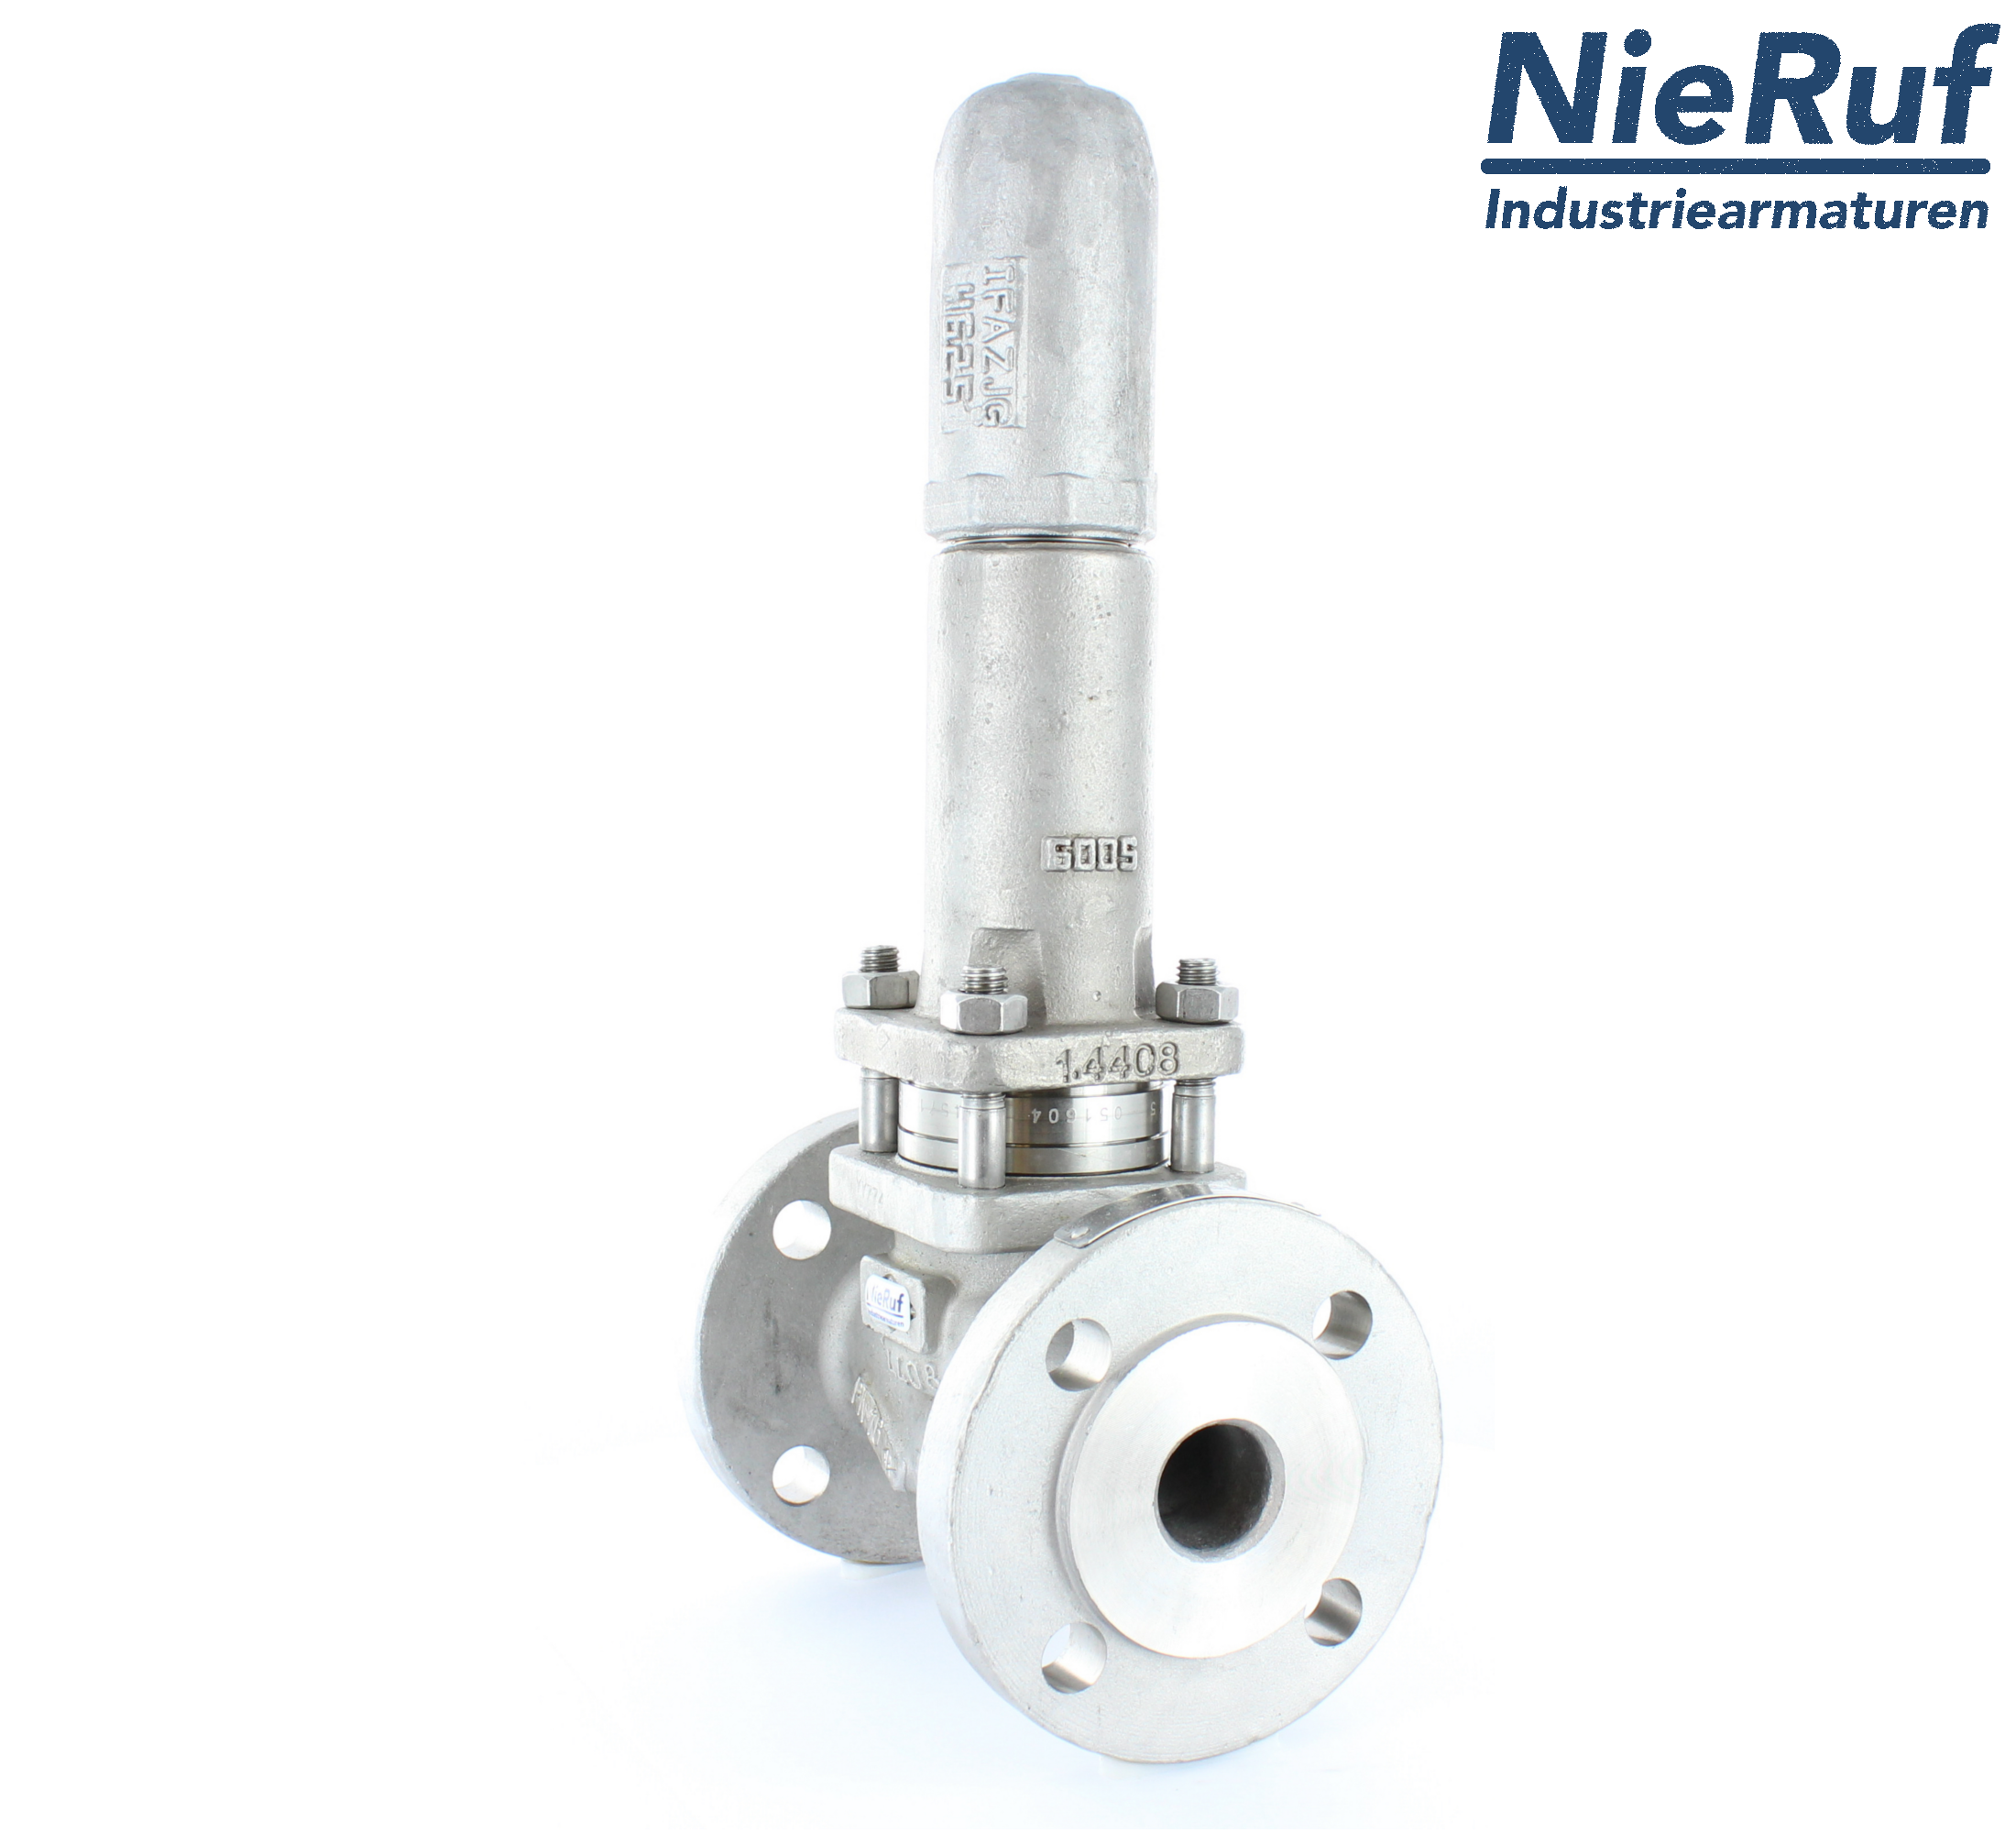 piston overflow valve DN 65 UV13 cast iron 1.0619+N 4,0 - 10,0 bar